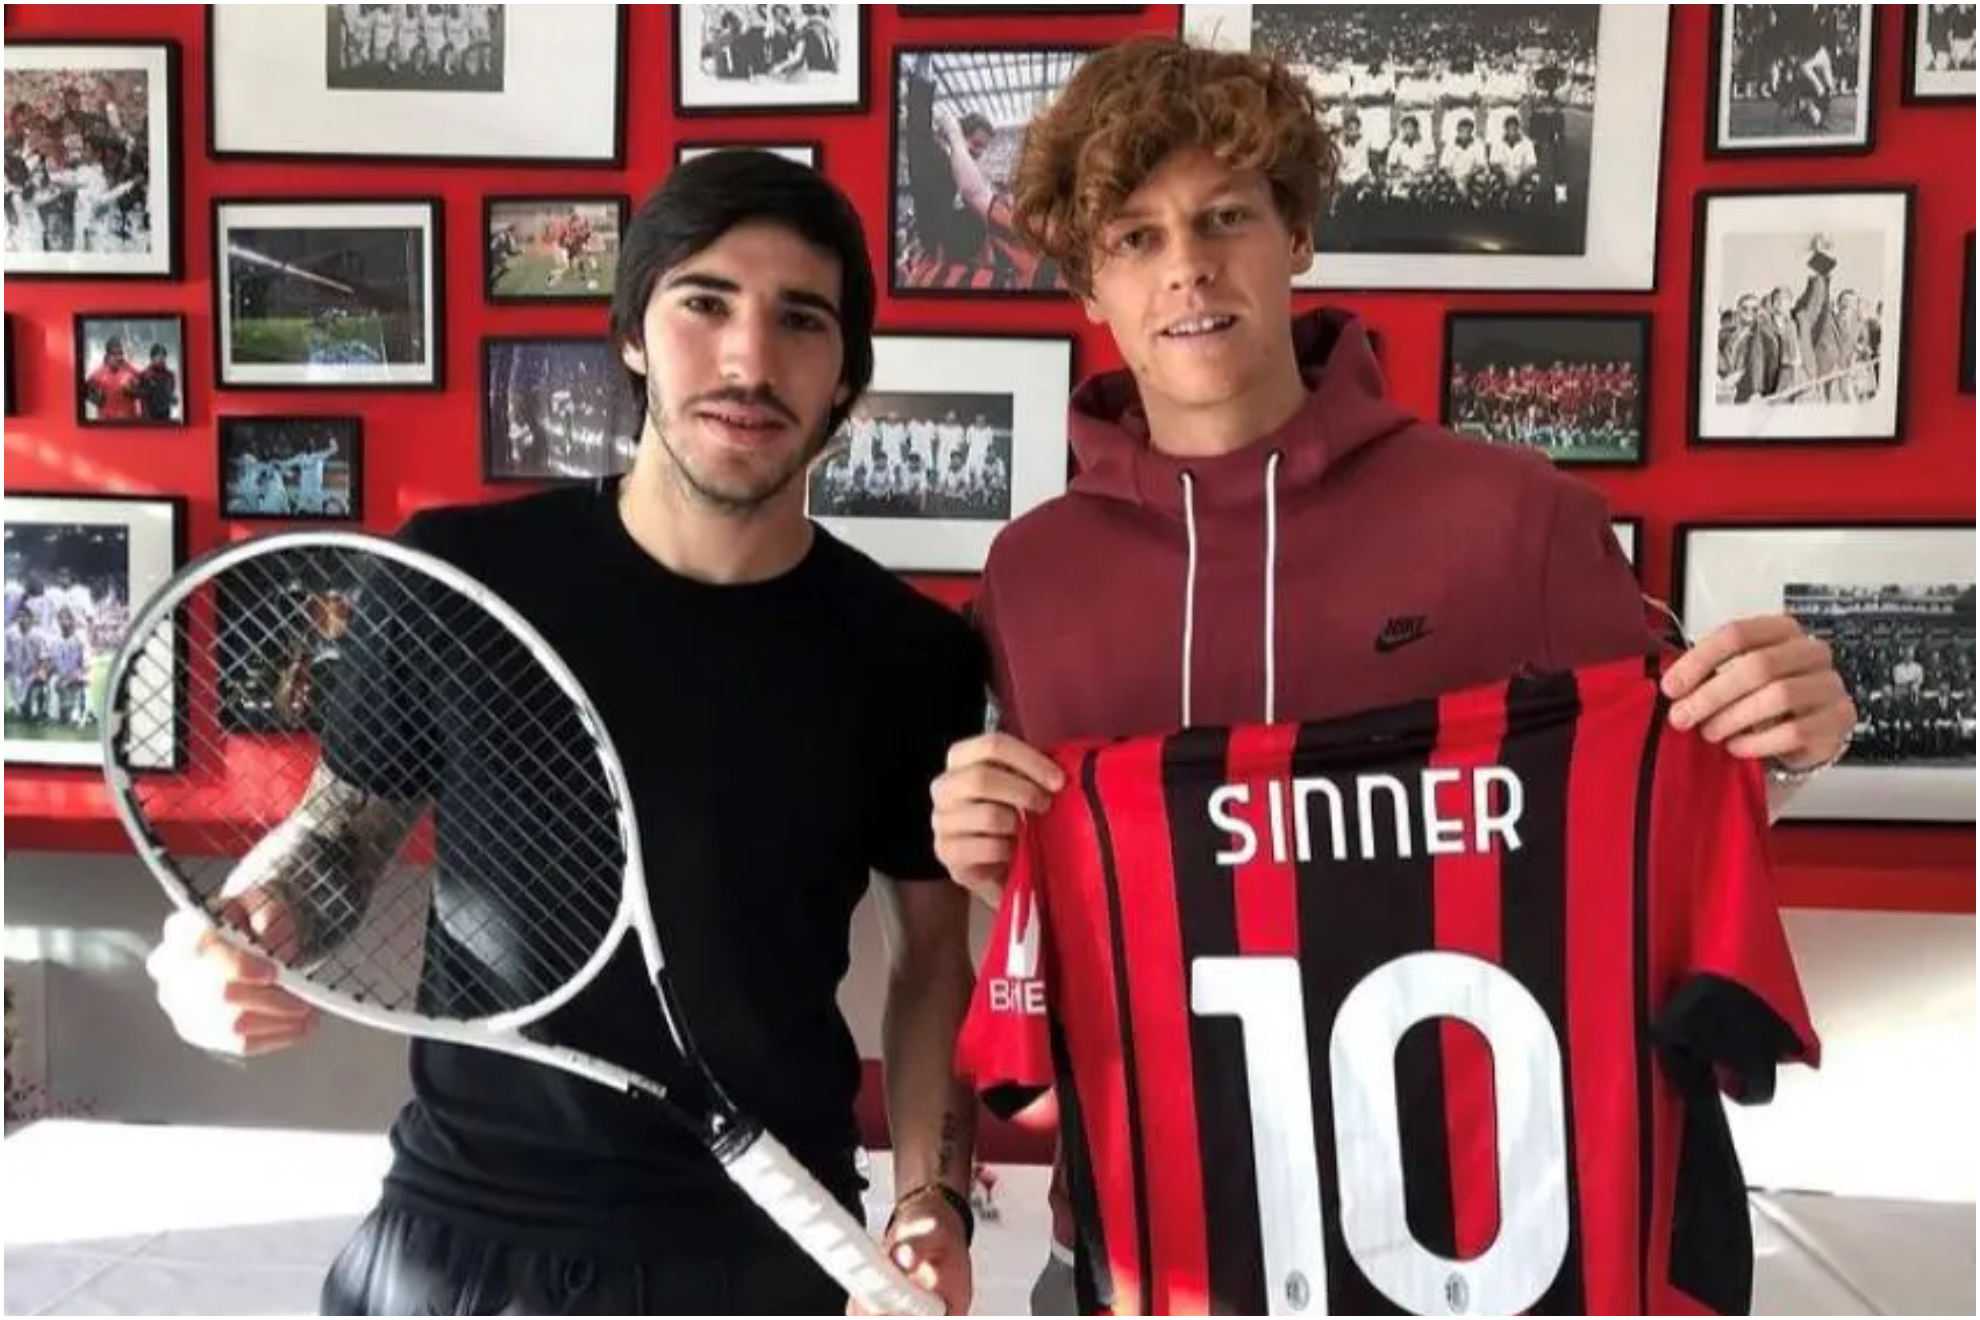 Sinner posa junto a Tonali, ex futbolista del Milan.